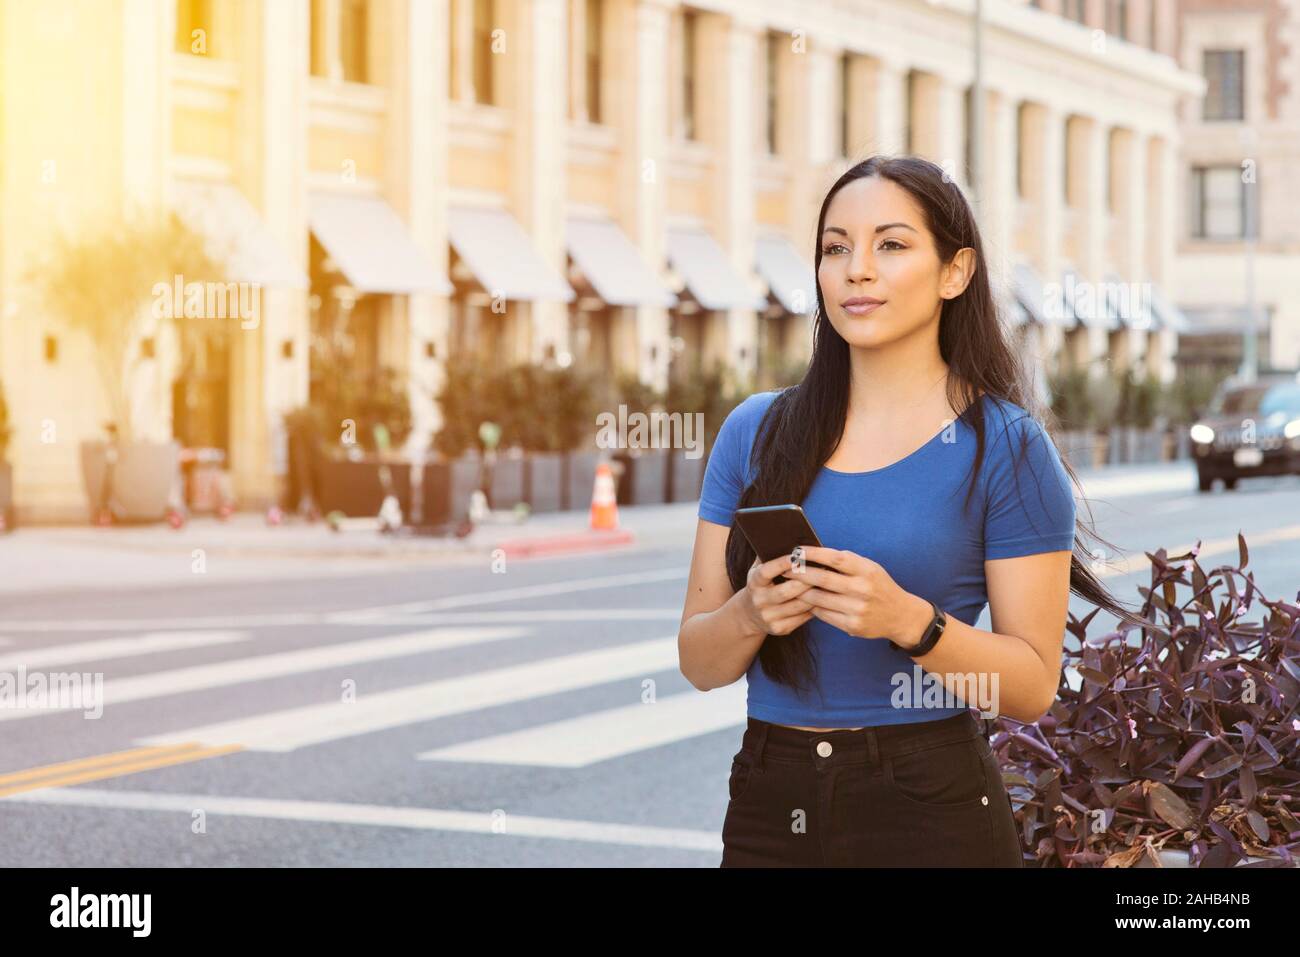 Giovane ragazza attraente attende una quota di corsa auto in città - Azienda smart phone in attesa sul marciapiede - ore diurne con illuminazione calda Foto Stock